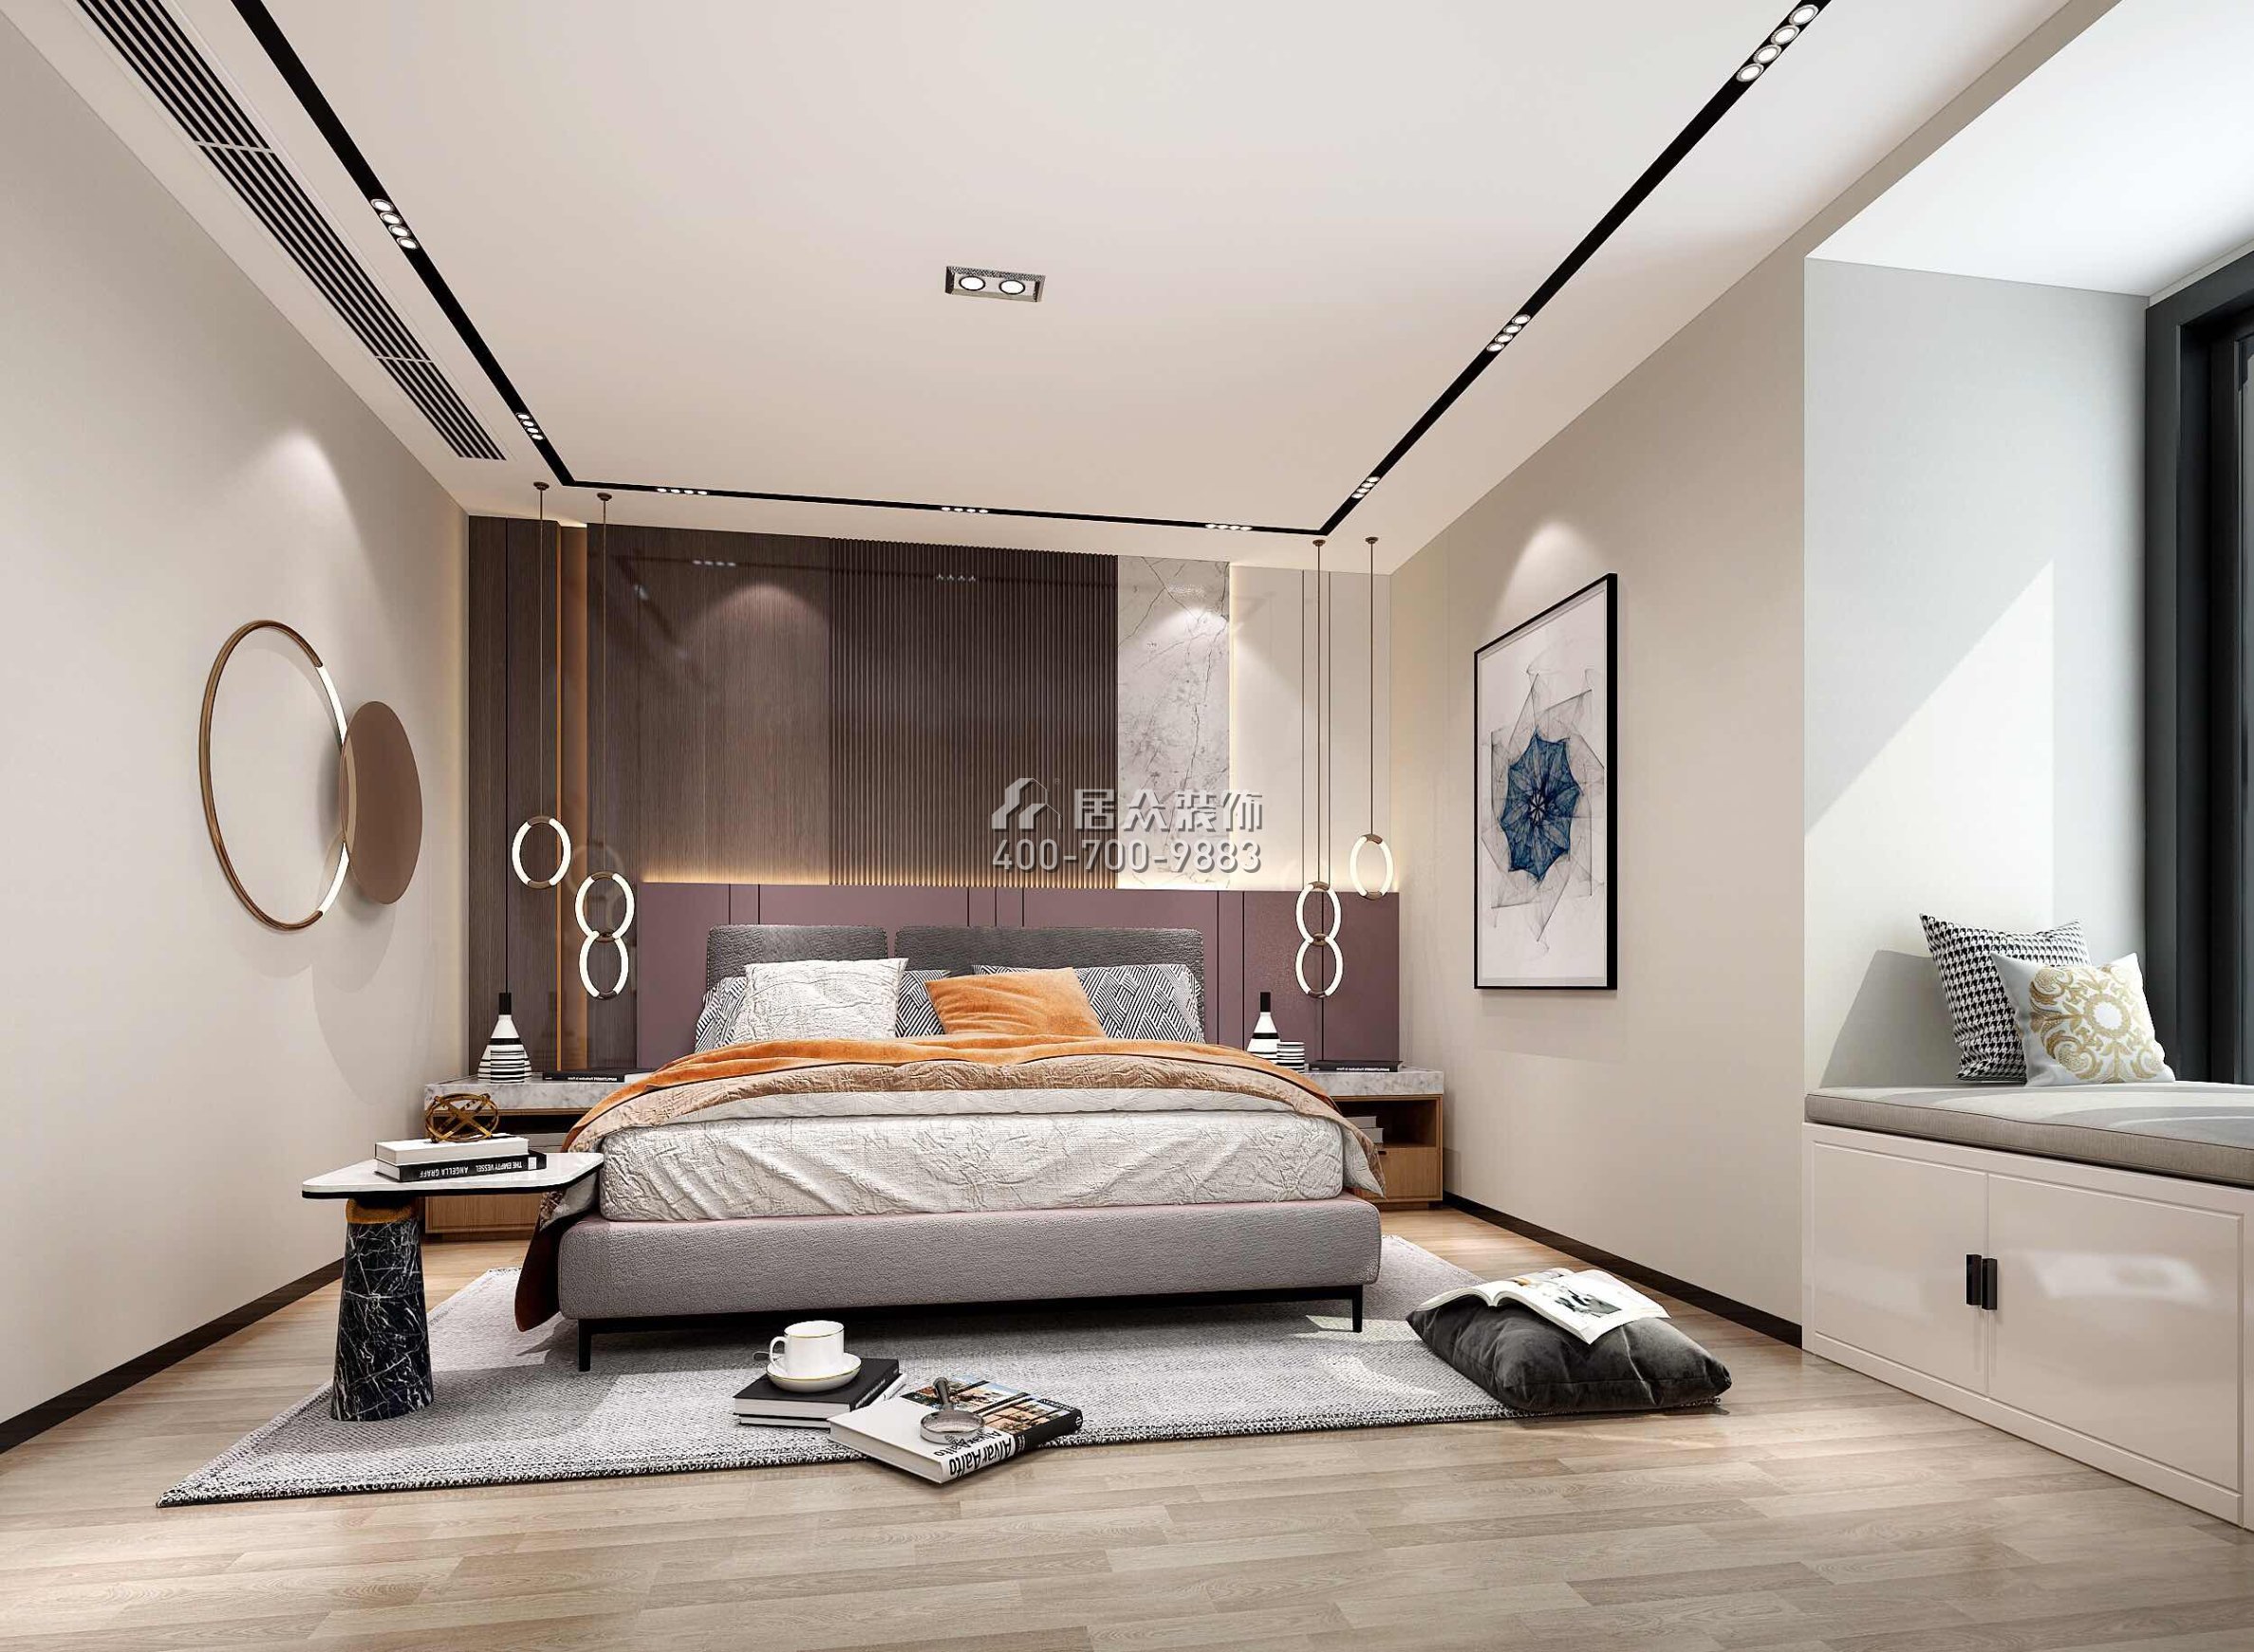 華潤小徑灣110平方米現代簡約風格平層戶型臥室裝修效果圖